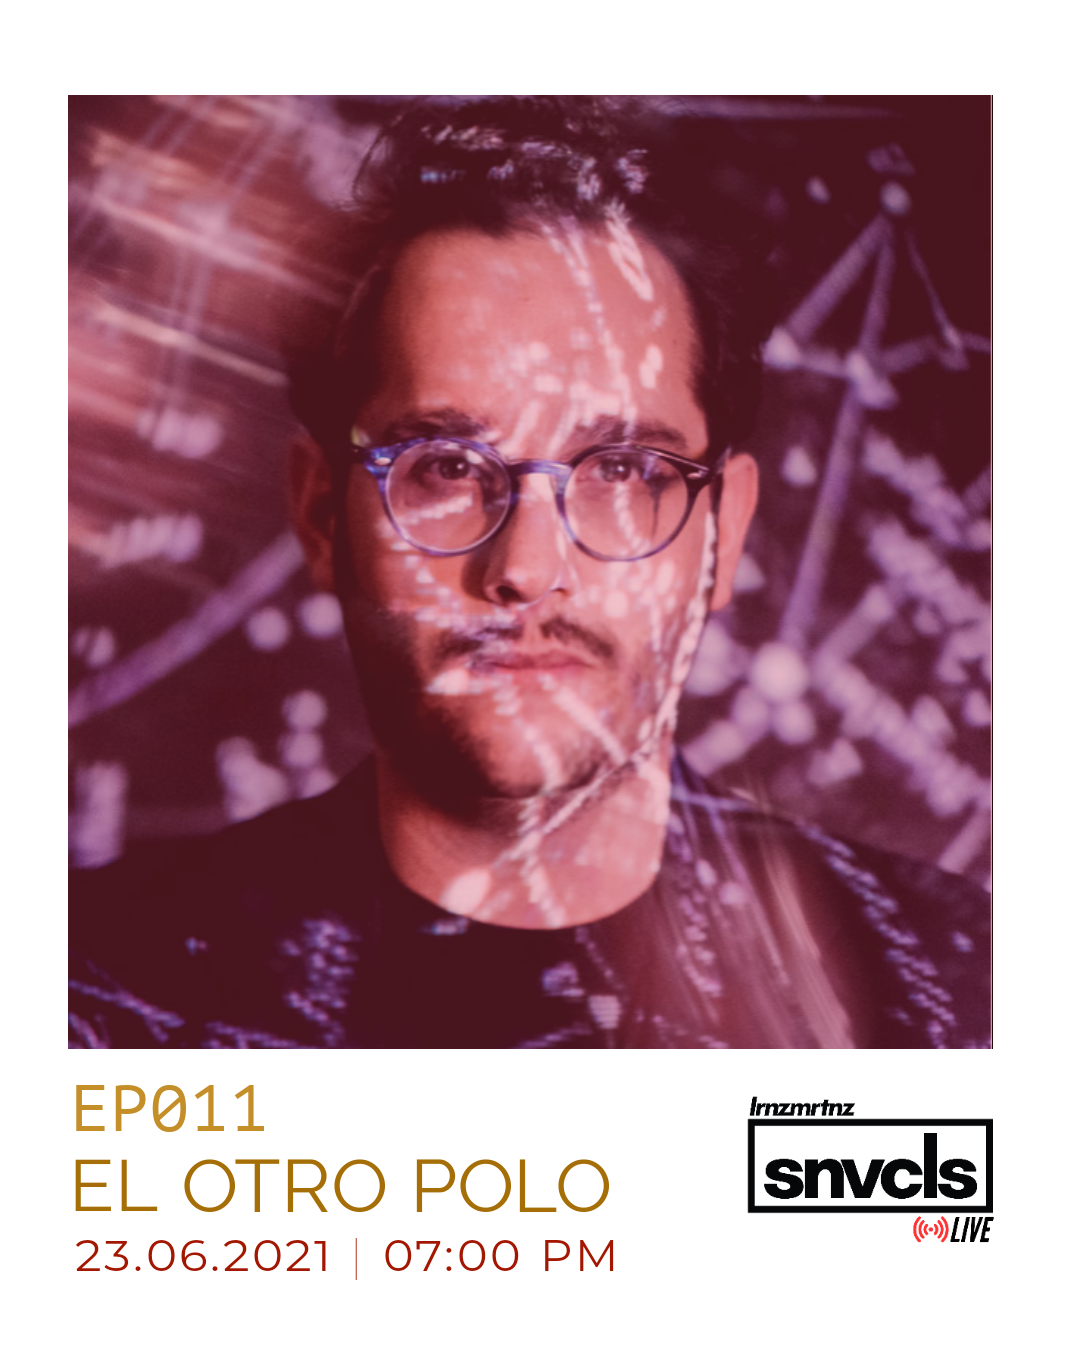 [snvcls: live] EP011 | El Otro Polo